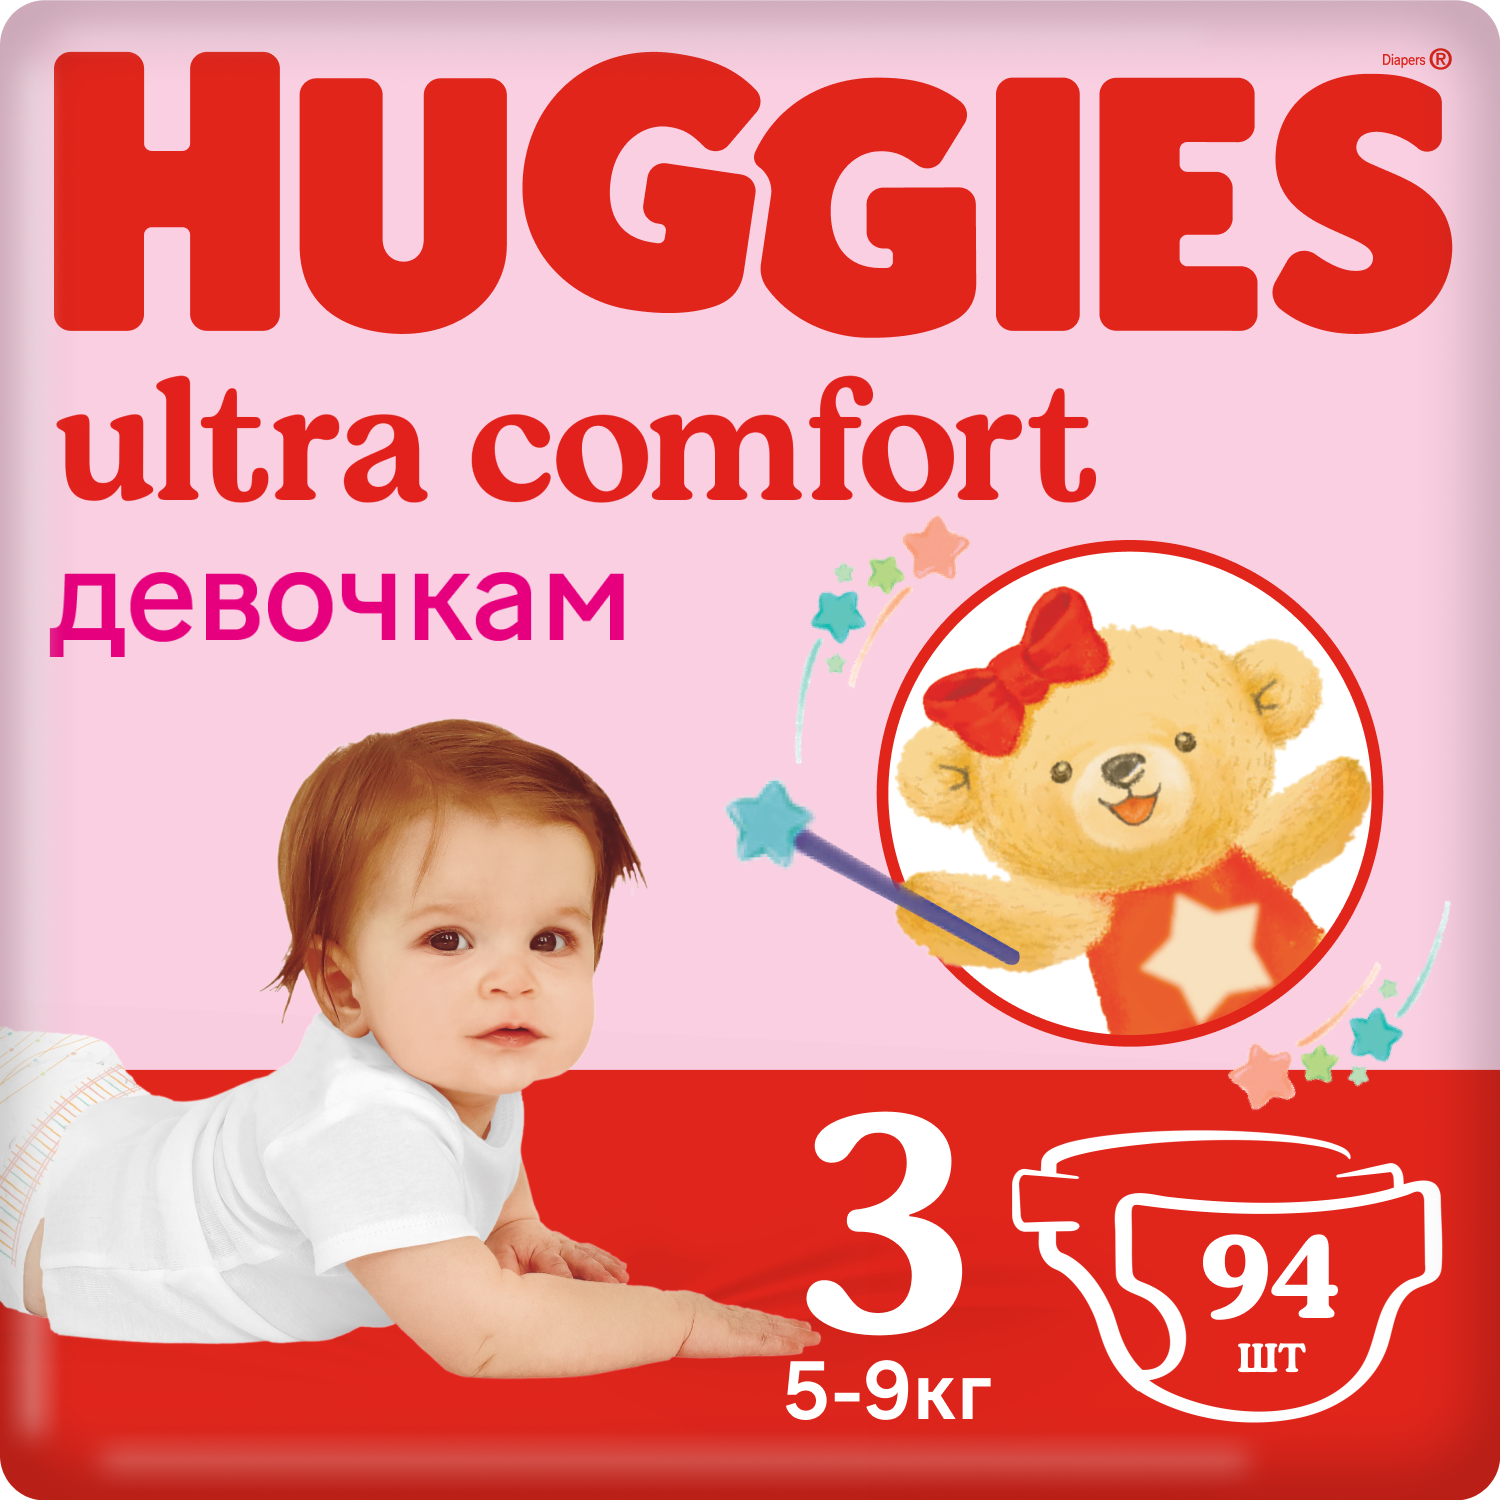 Подгузники Huggies Ultra Comfort для девочек 3 (5-9 кг), 94 шт. подгузники huggies ultra comfort для девочек 3 5 9 кг 94 шт